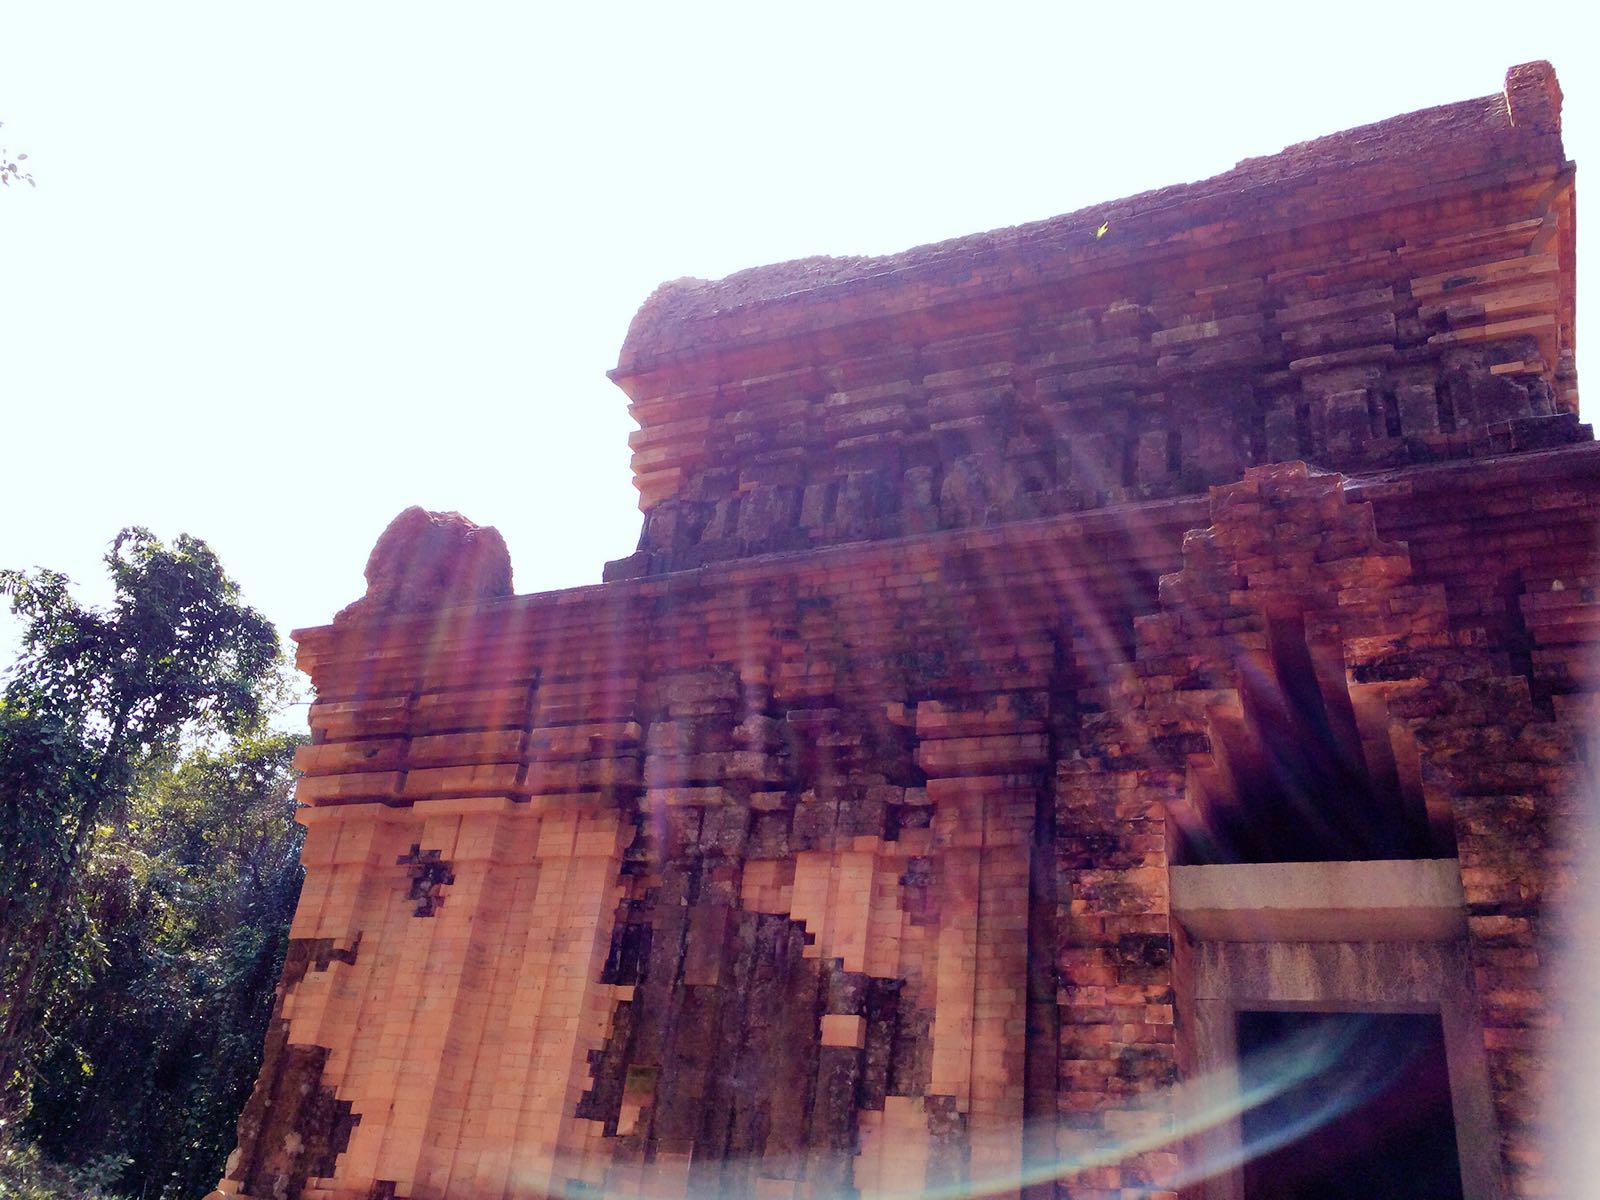 占婆美山遗址，是印度教神庙遗址，距今一千多年历史。隐藏在距离会安古城4